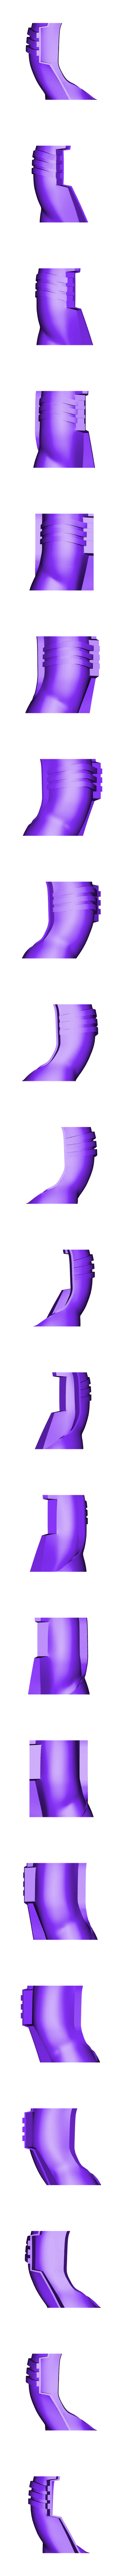 Part 8 v3.stl Бесплатный STL файл Шлем клон-трупера Фаза 2 Звездные войны・3D-печатная модель для загрузки, VillainousPropShop